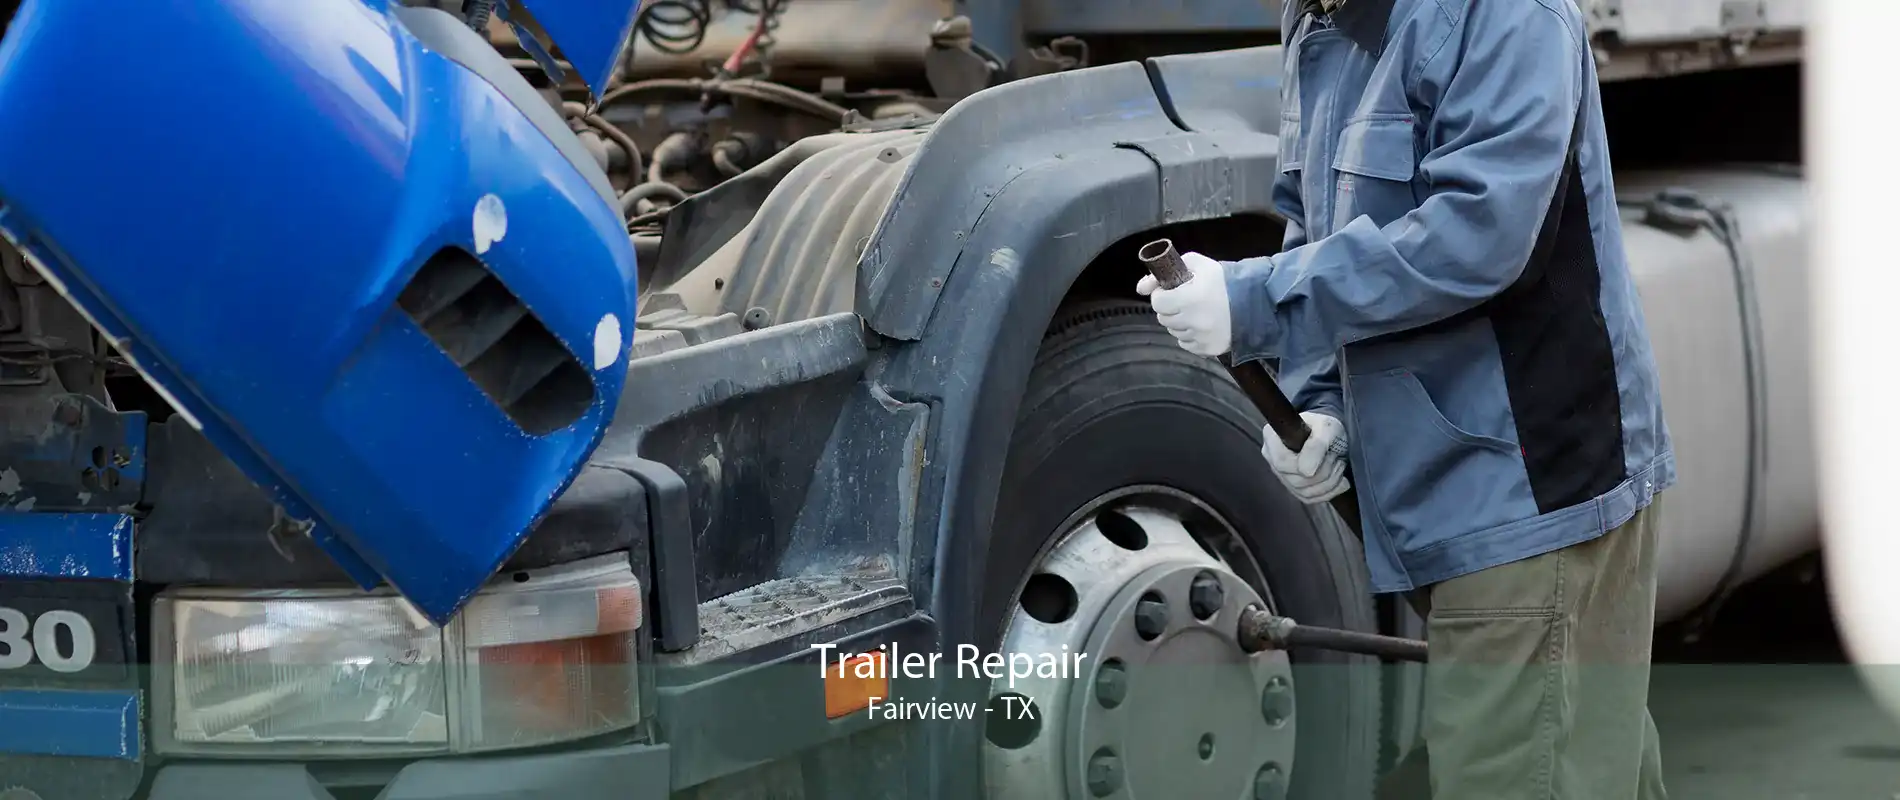 Trailer Repair Fairview - TX